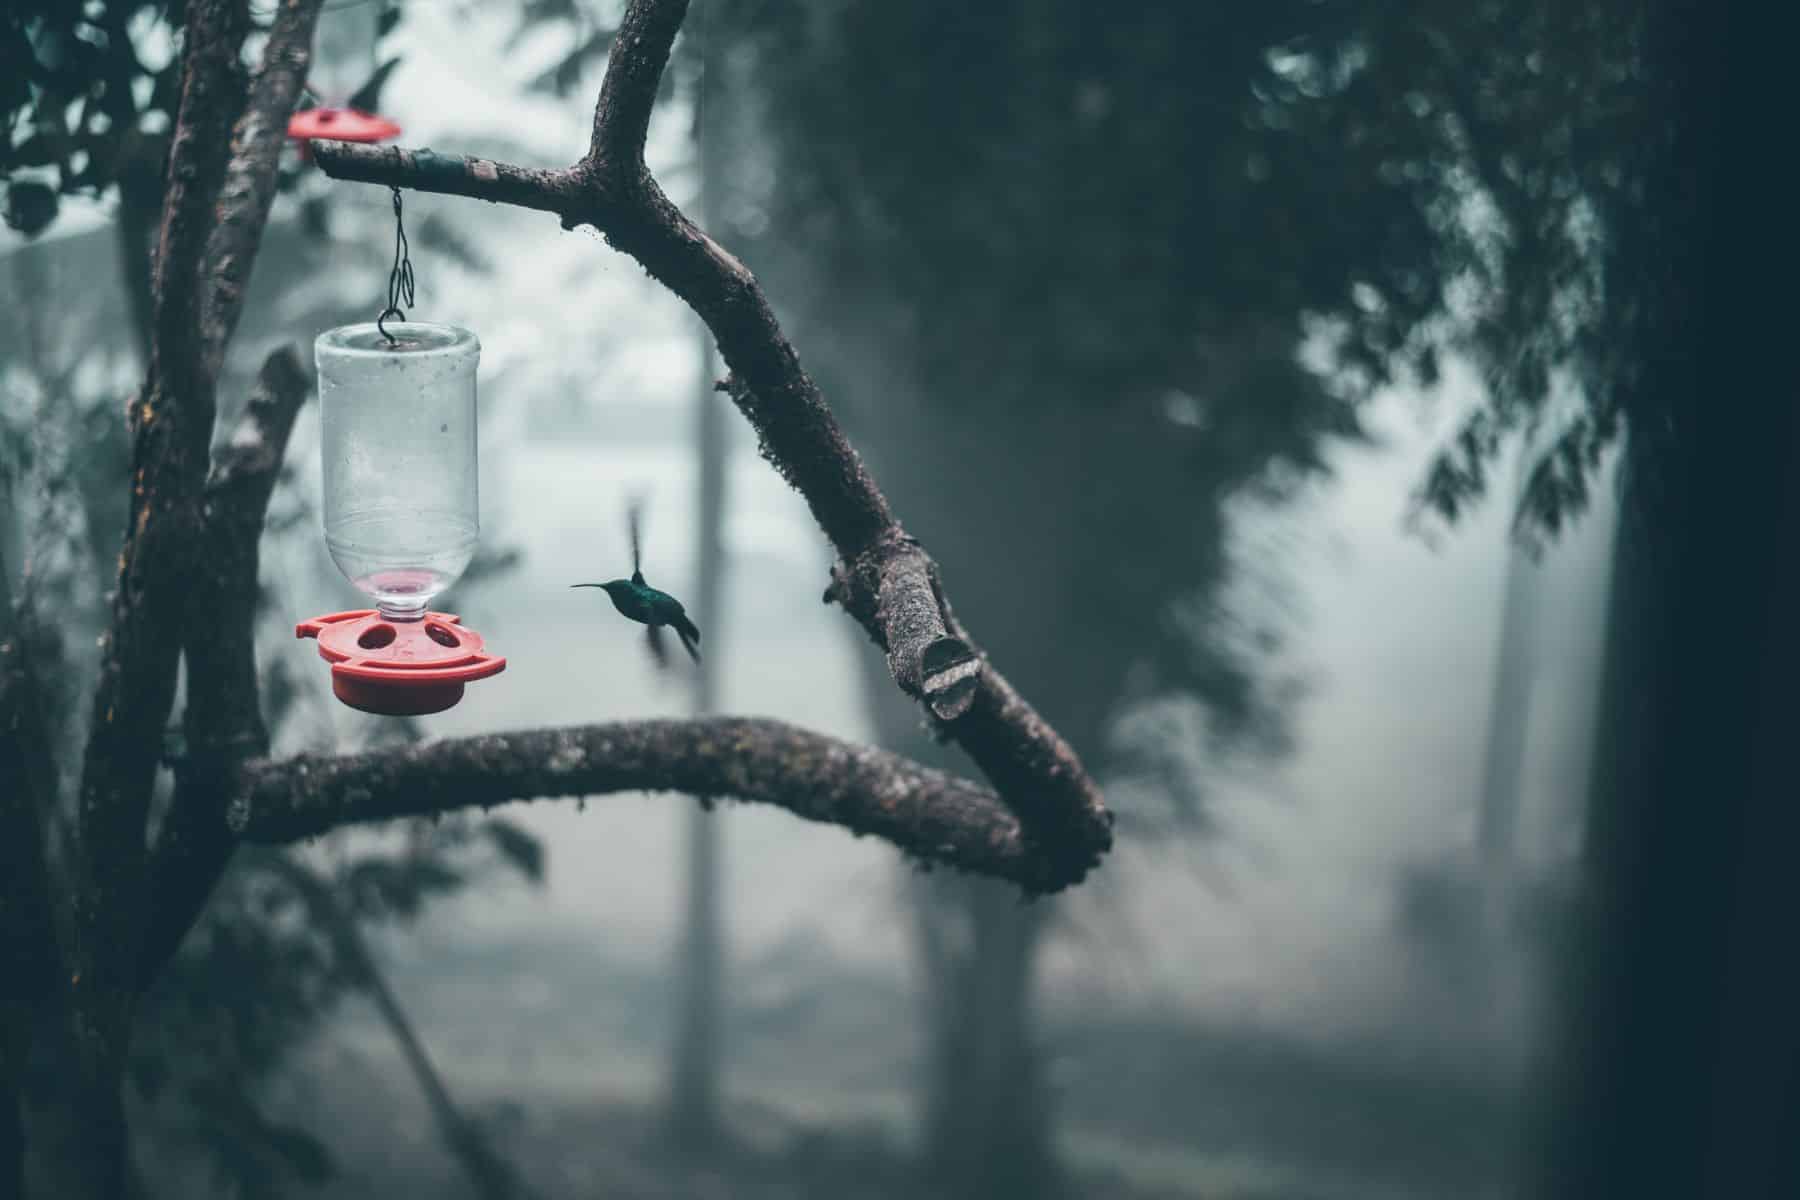 A hummingbird feeding on a bird feeder in Bogota, Colombia